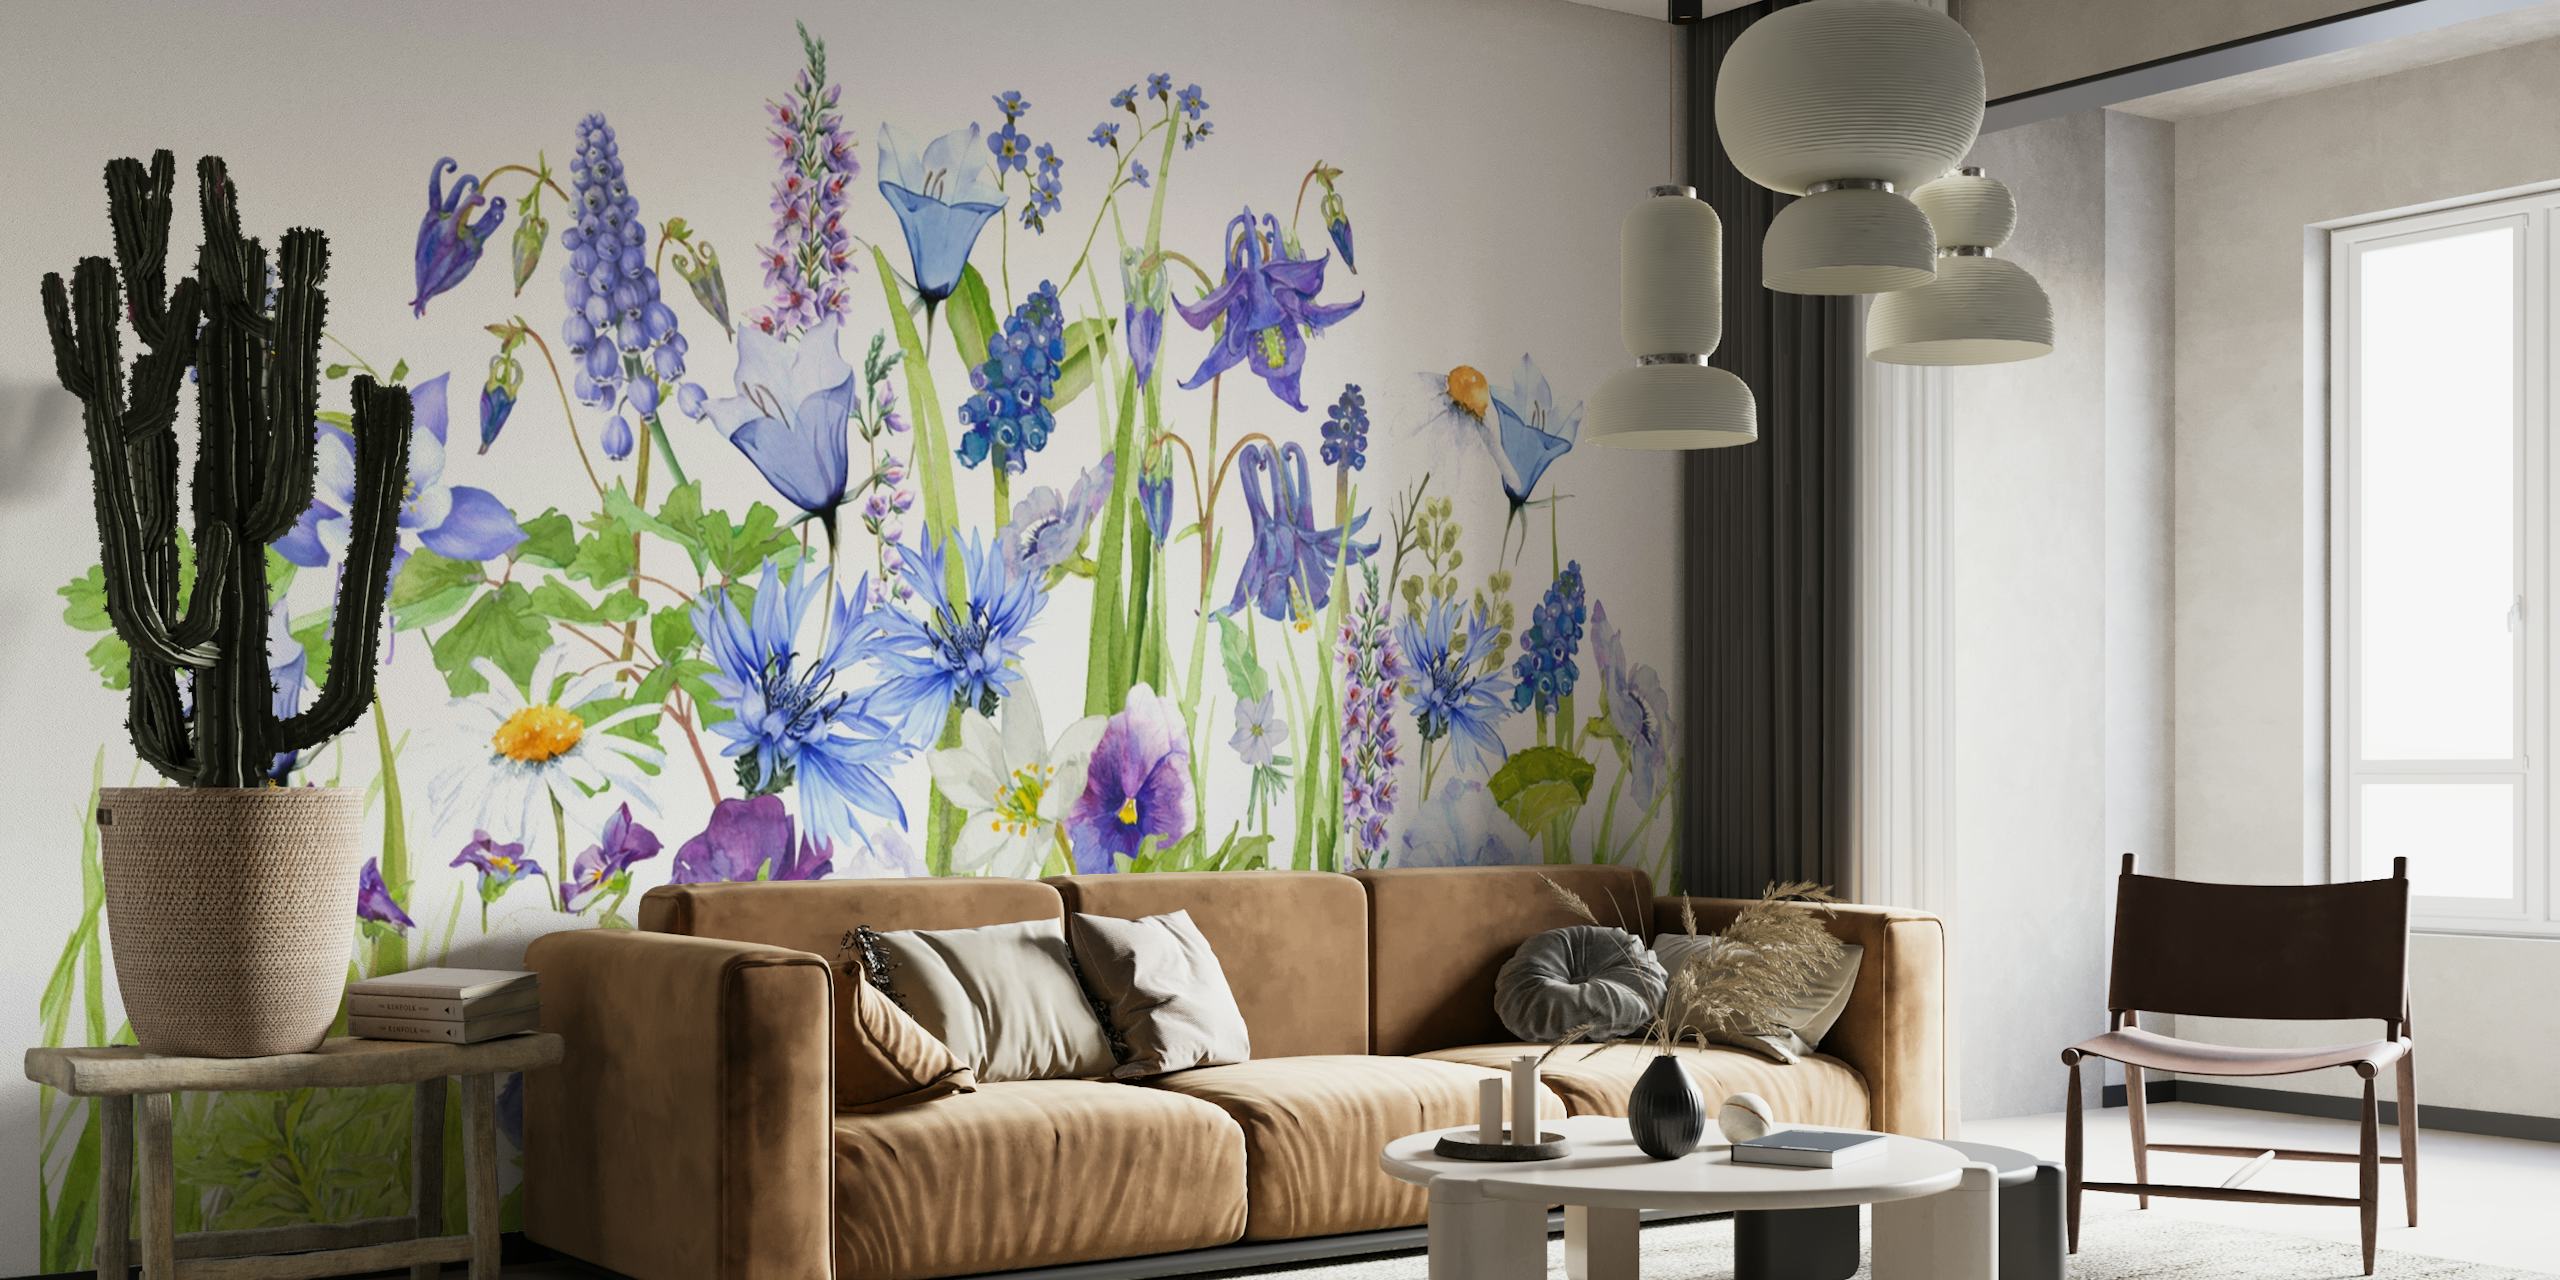 Et vægmaleri, der viser en række vilde blomster i blå og grønne nuancer, hvilket skaber en fordybende sommerengscene.